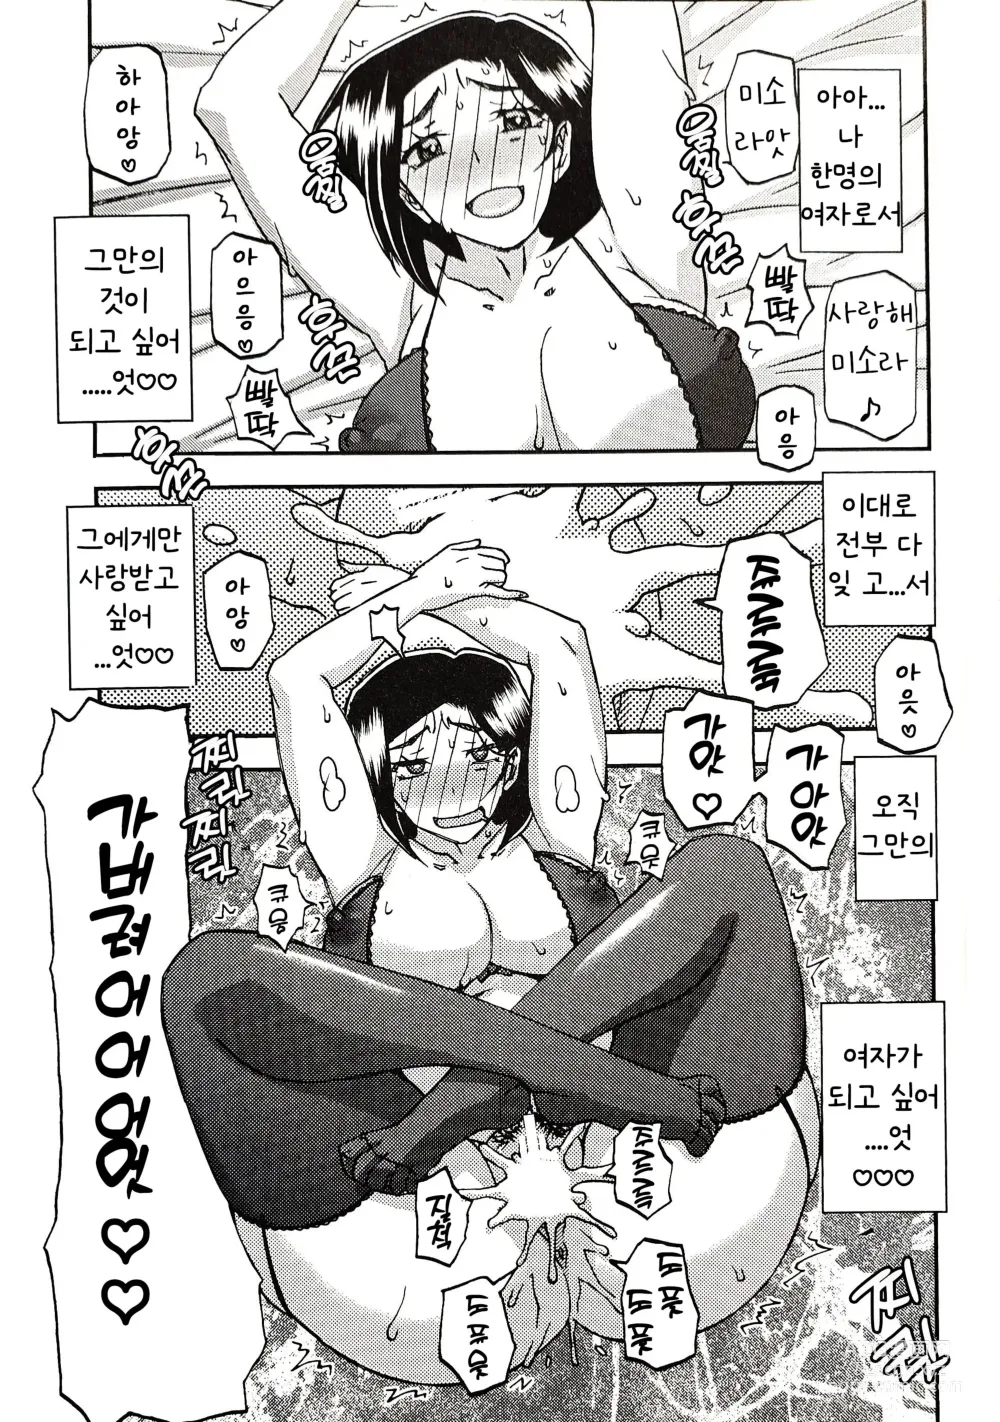 Page 20 of doujinshi Akebi no Mi - Misora AFTER